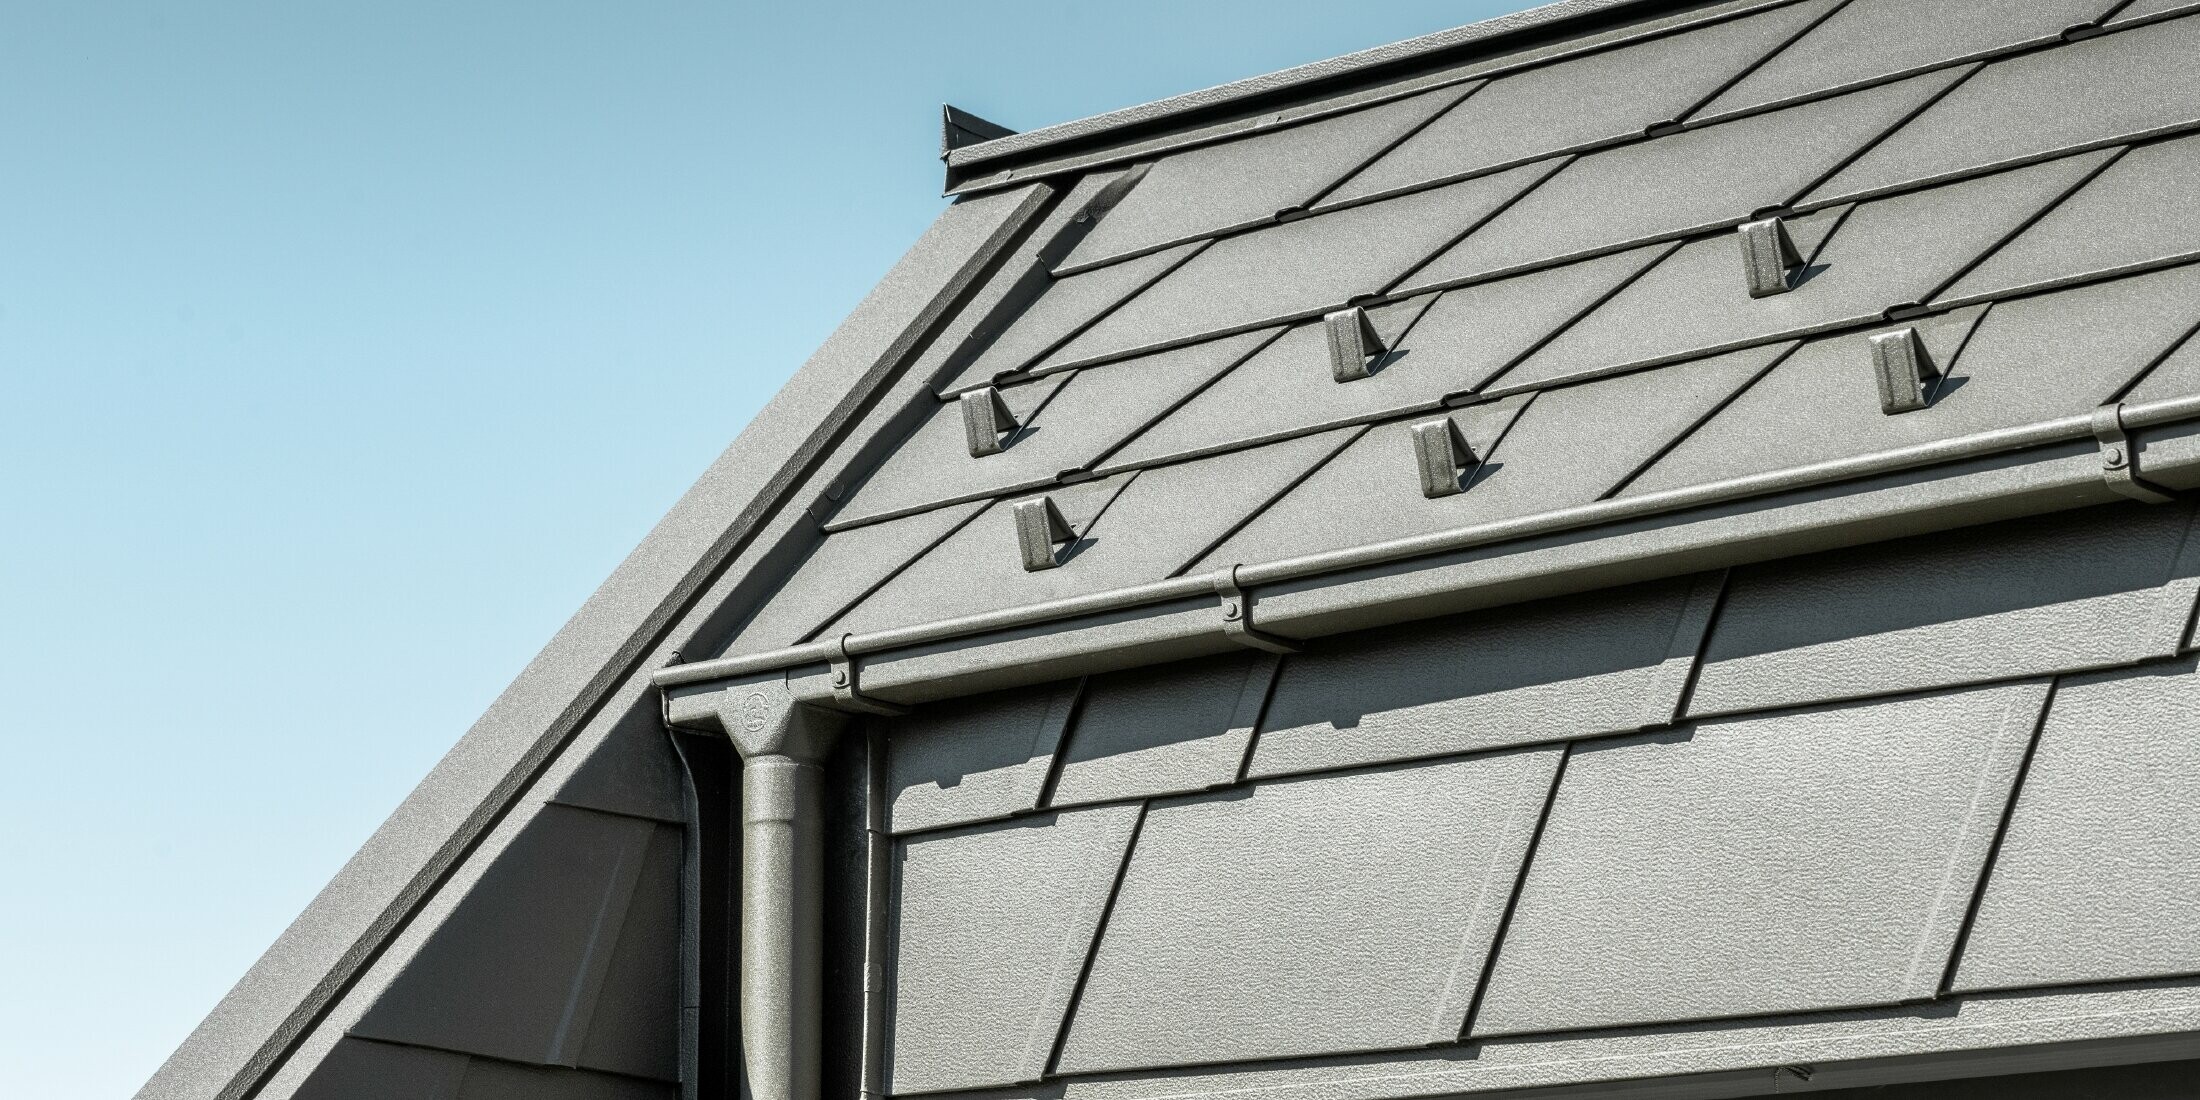 PREFA DS.19 Aluminium-Dachschindeln mit Schneestopper. Die Dachentwässerung erfolgt über das PREFA Quadratrohr und Ablaufrohr in der Farbe P.10 Braun.